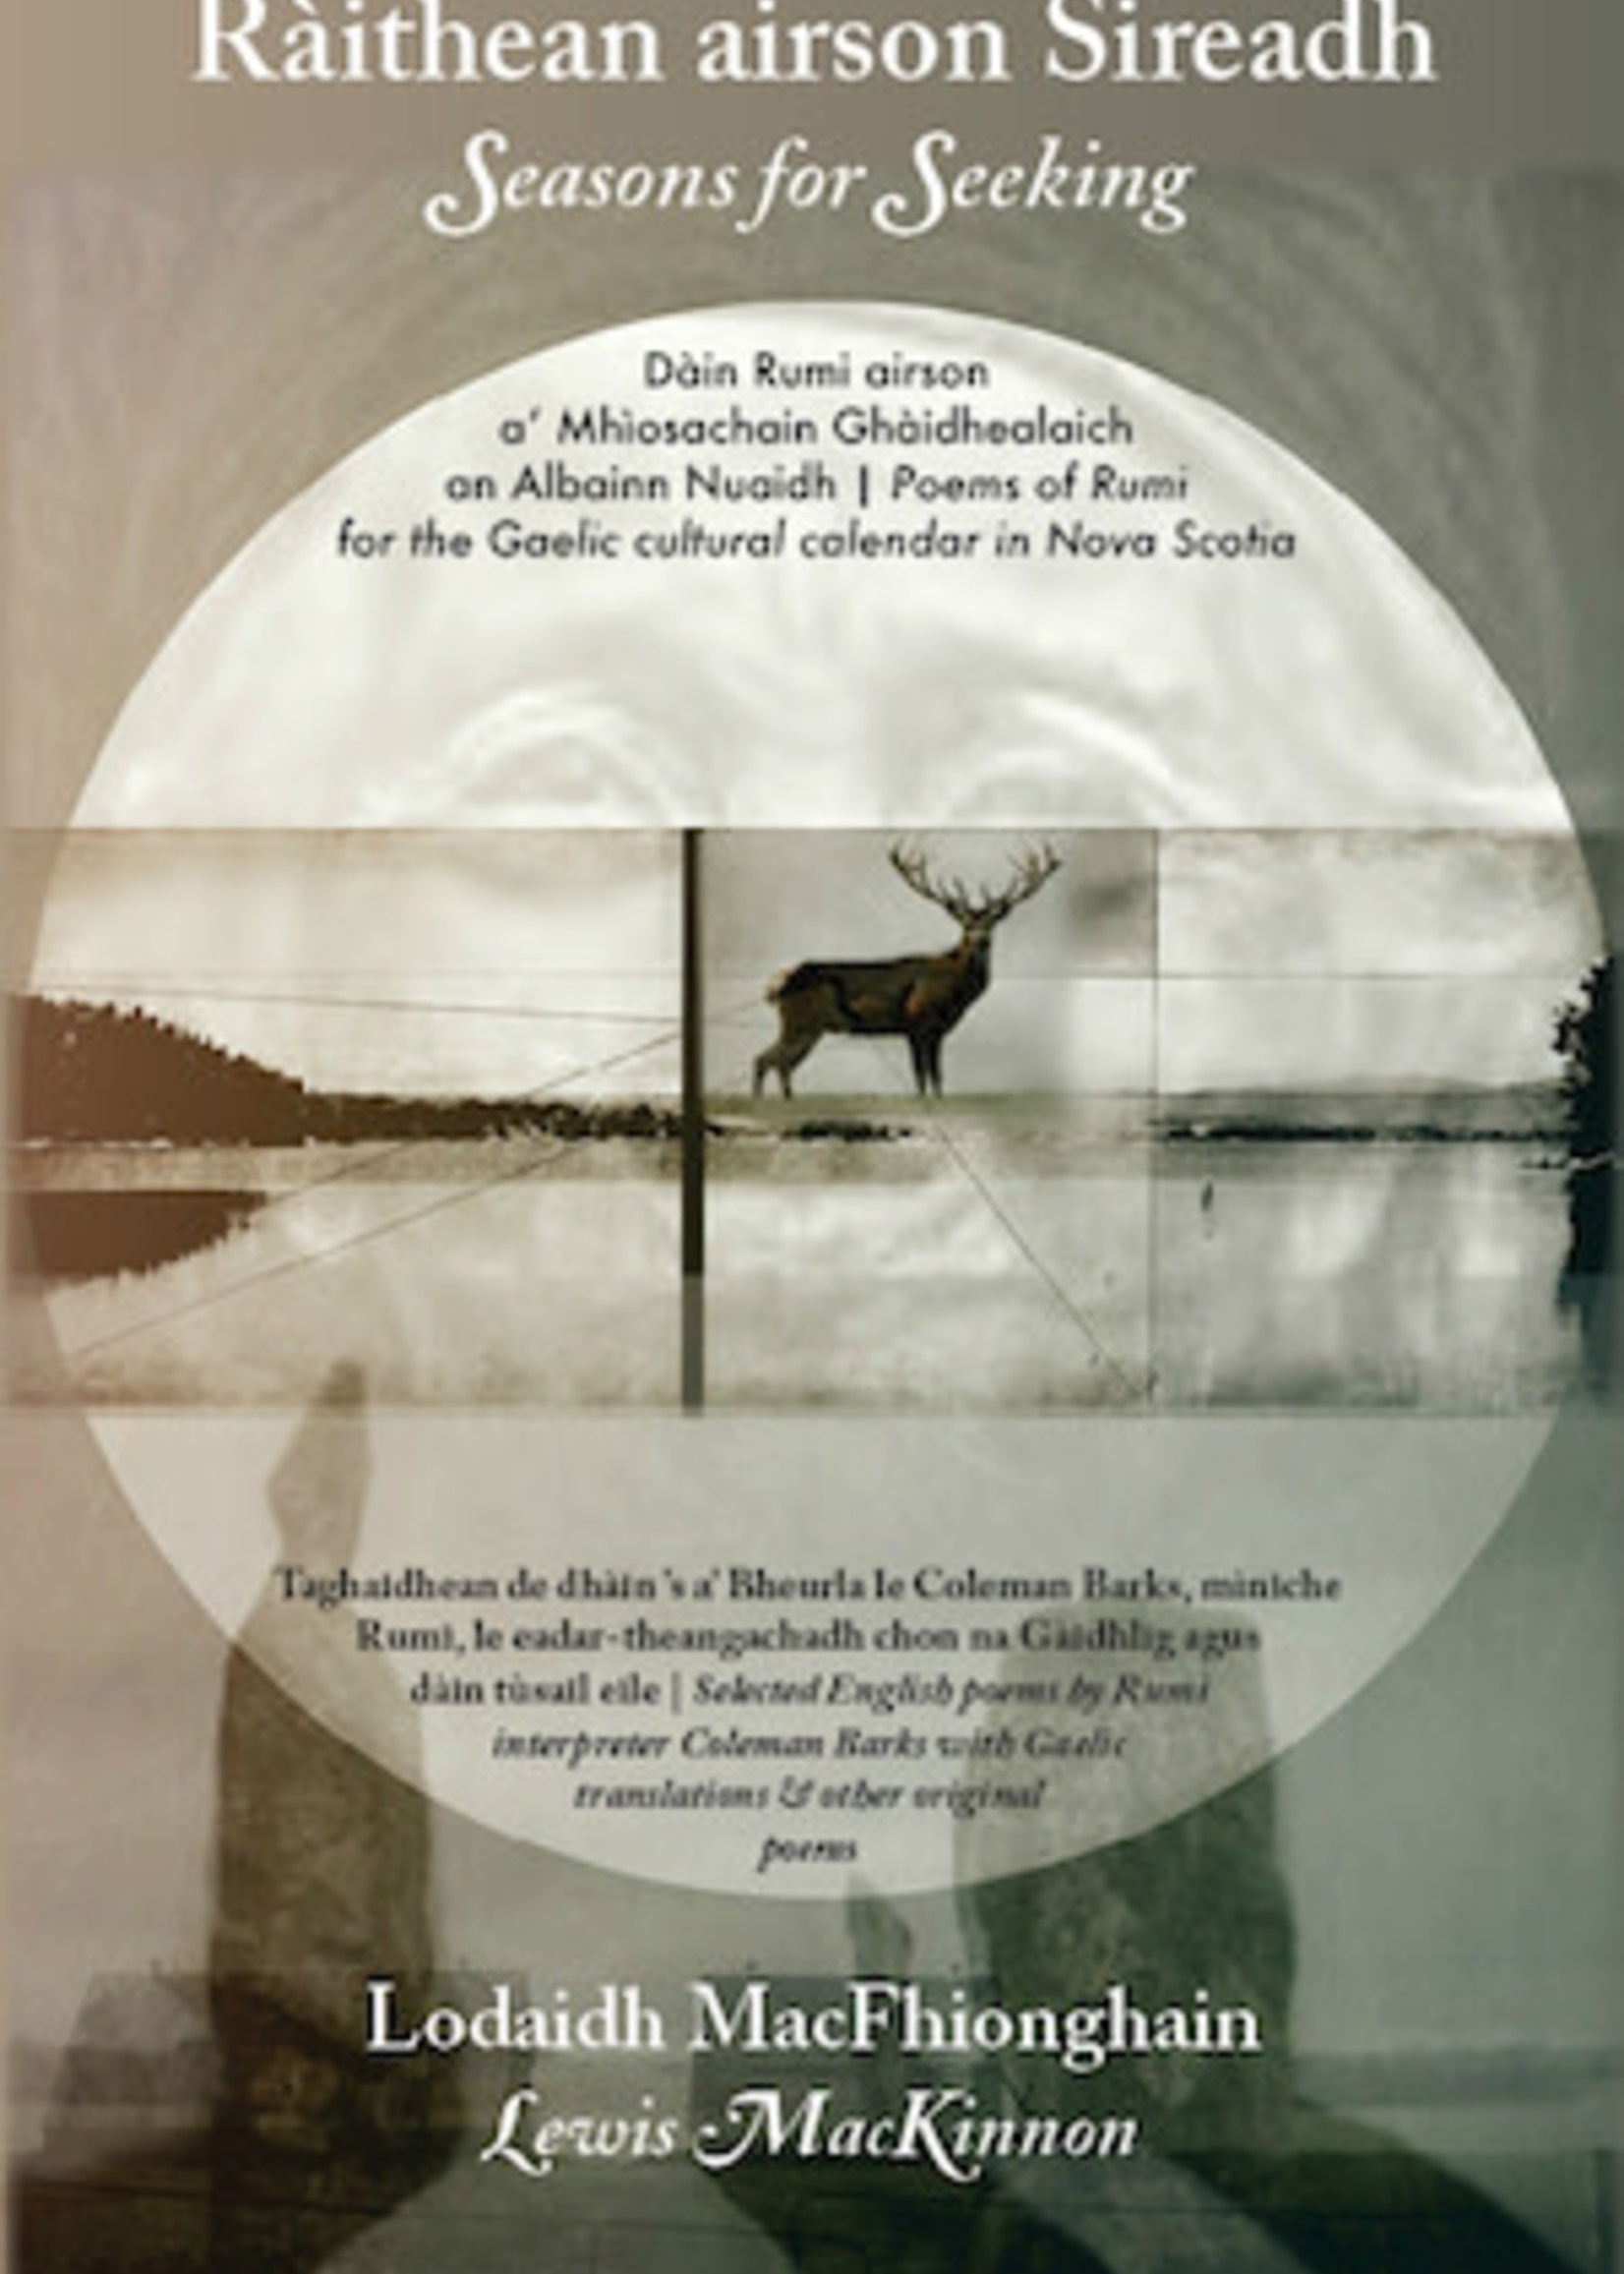 Ràithean airson Sireadh / Seasons for Seeking: Poems of Rumi for the Gaelic cultural Calendar in Nova Scotia by Lodaidh MacFhionghain